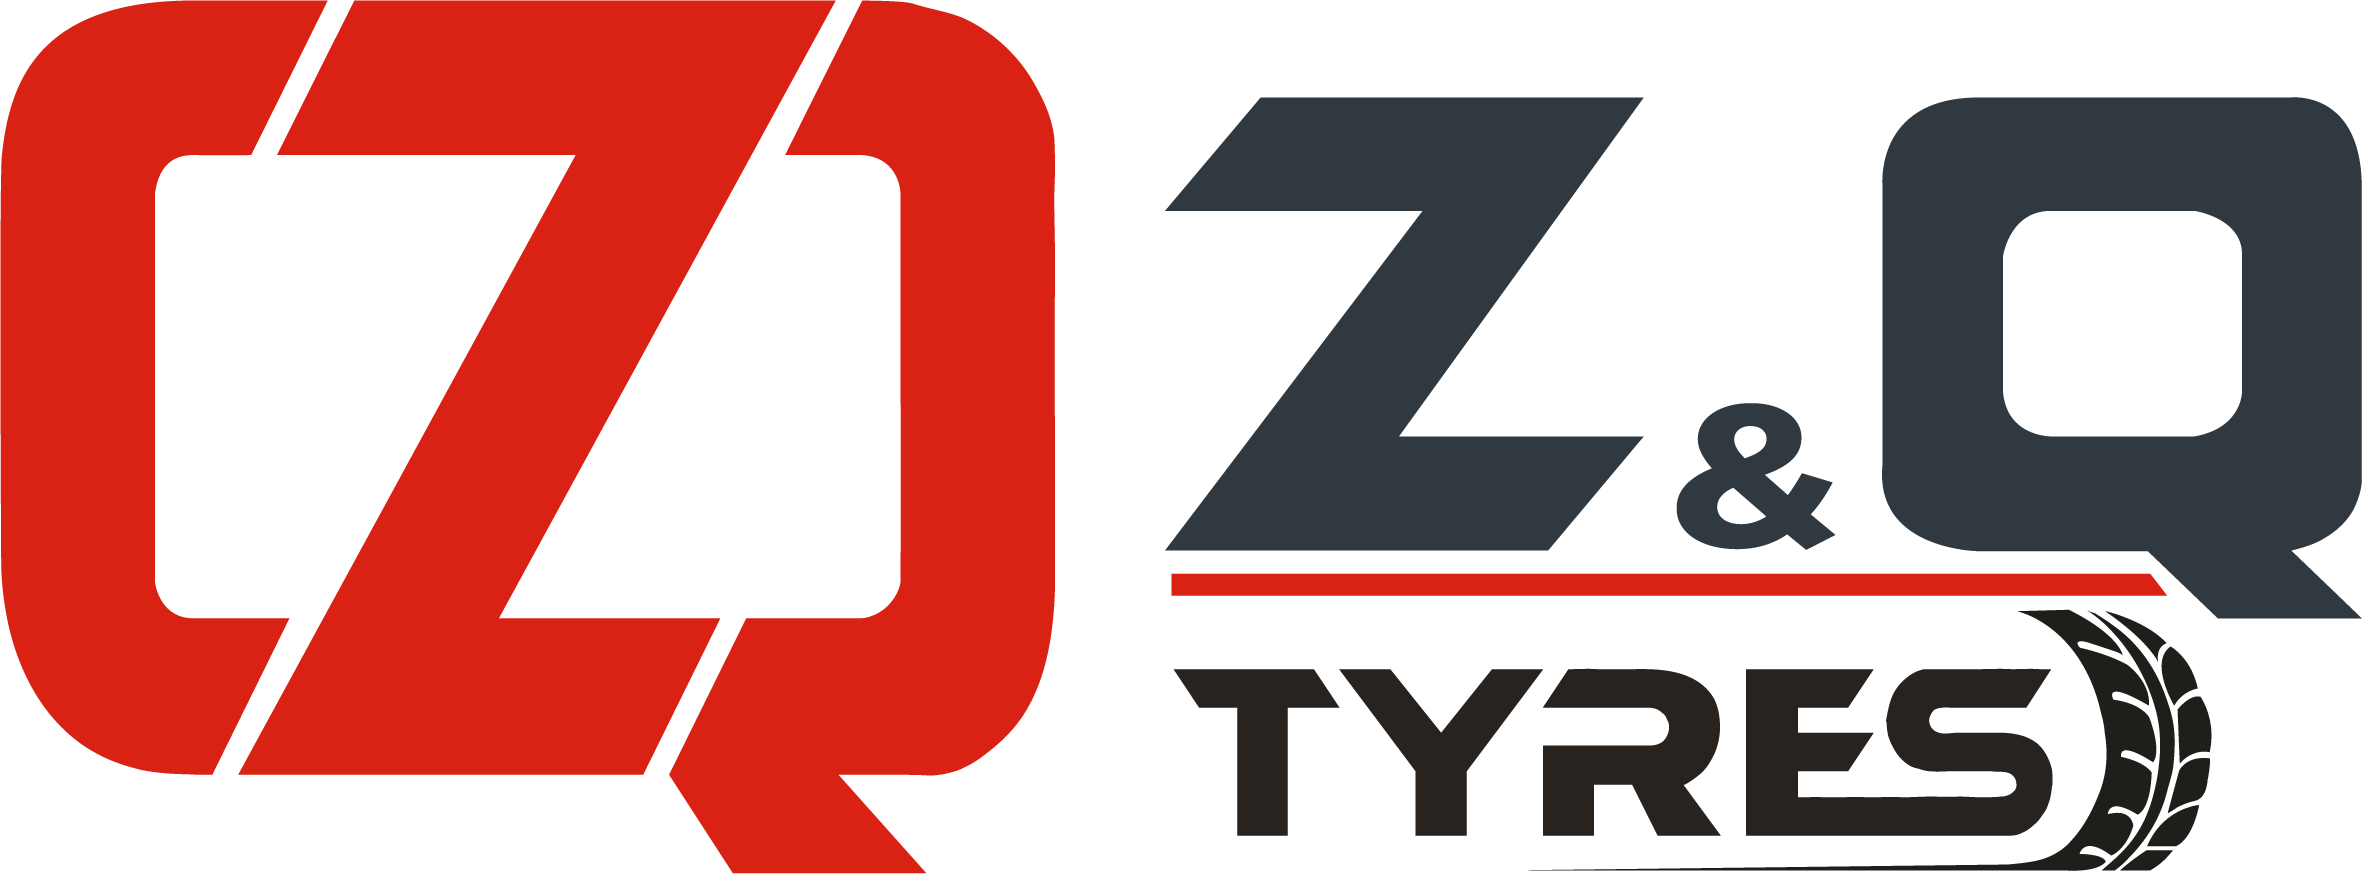 ZQ TYRES - Neumáticos Agrícolas, Neumáticos Industriales y Neumáticos para Maquinaria de Construcción | Reacondicionamiento de Neumáticos, Recauchutado en Frío y Caliente y Accesorios